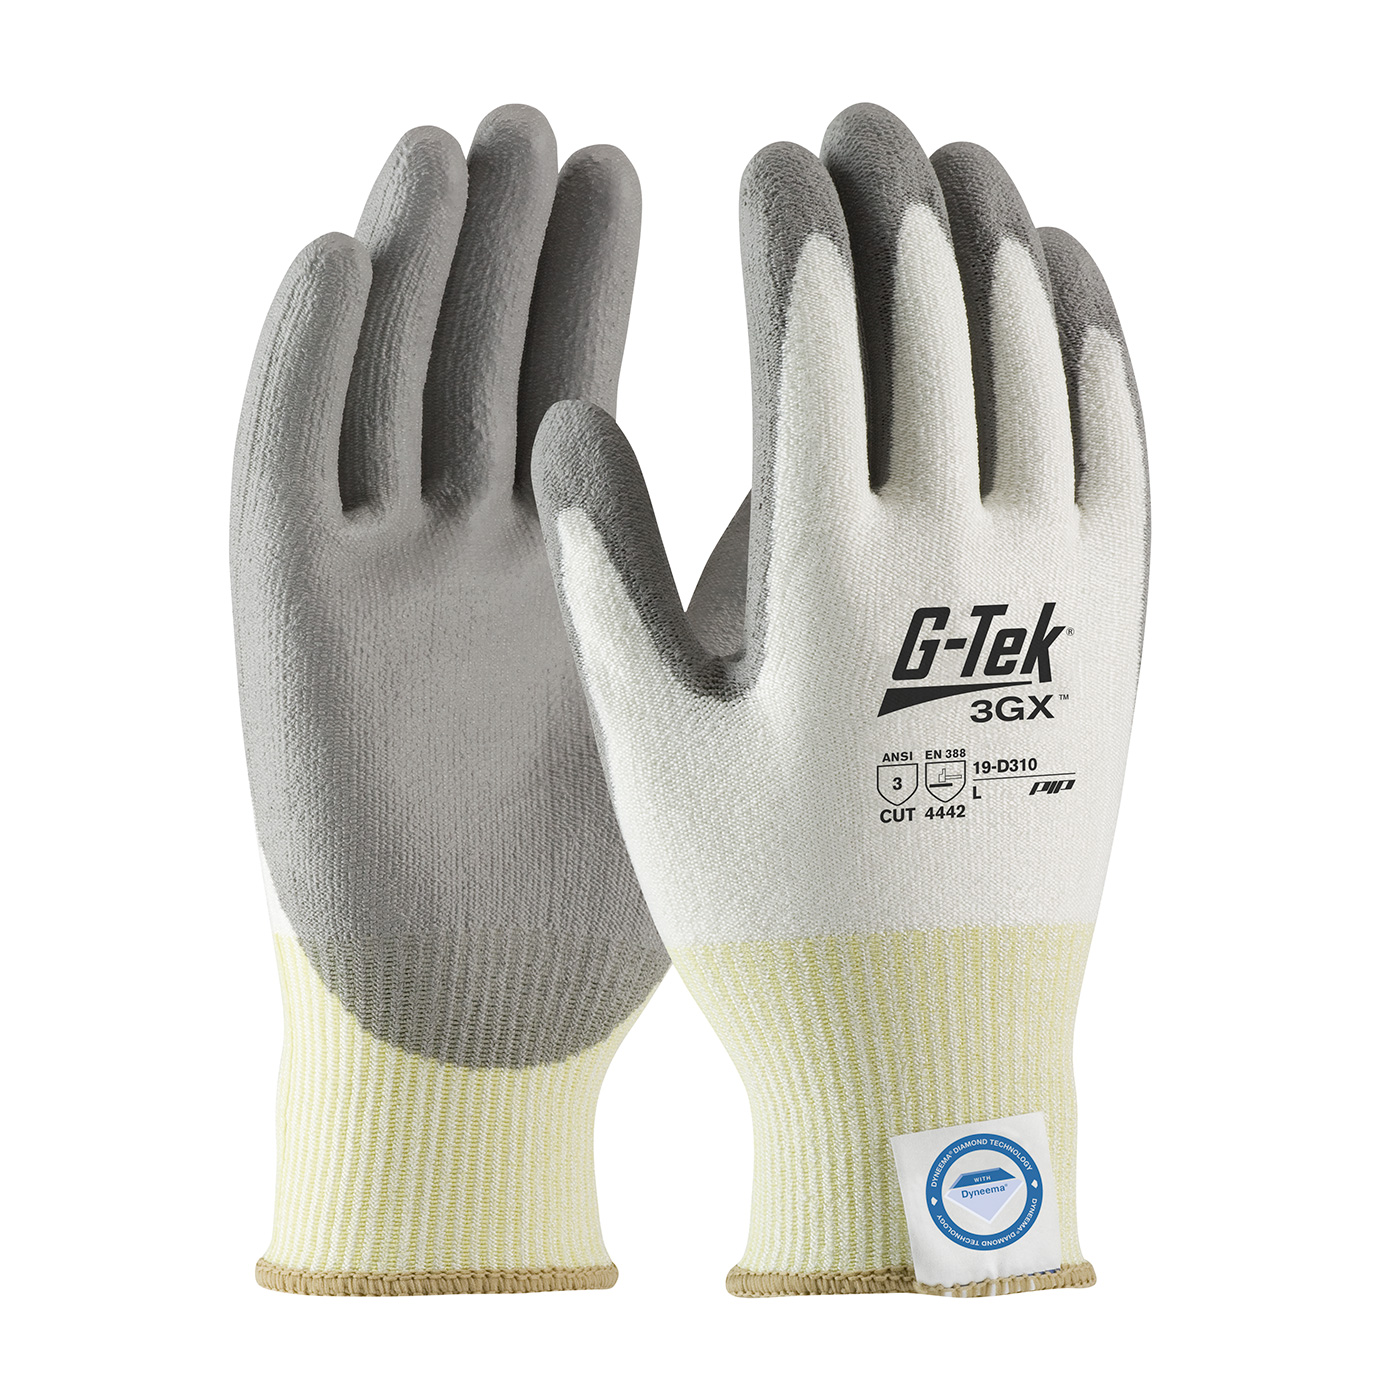 PIP®G-Tek®3GX Dyneema®钻石抗割伤手套，带聚氨酯涂层，提供割伤级别A3保护